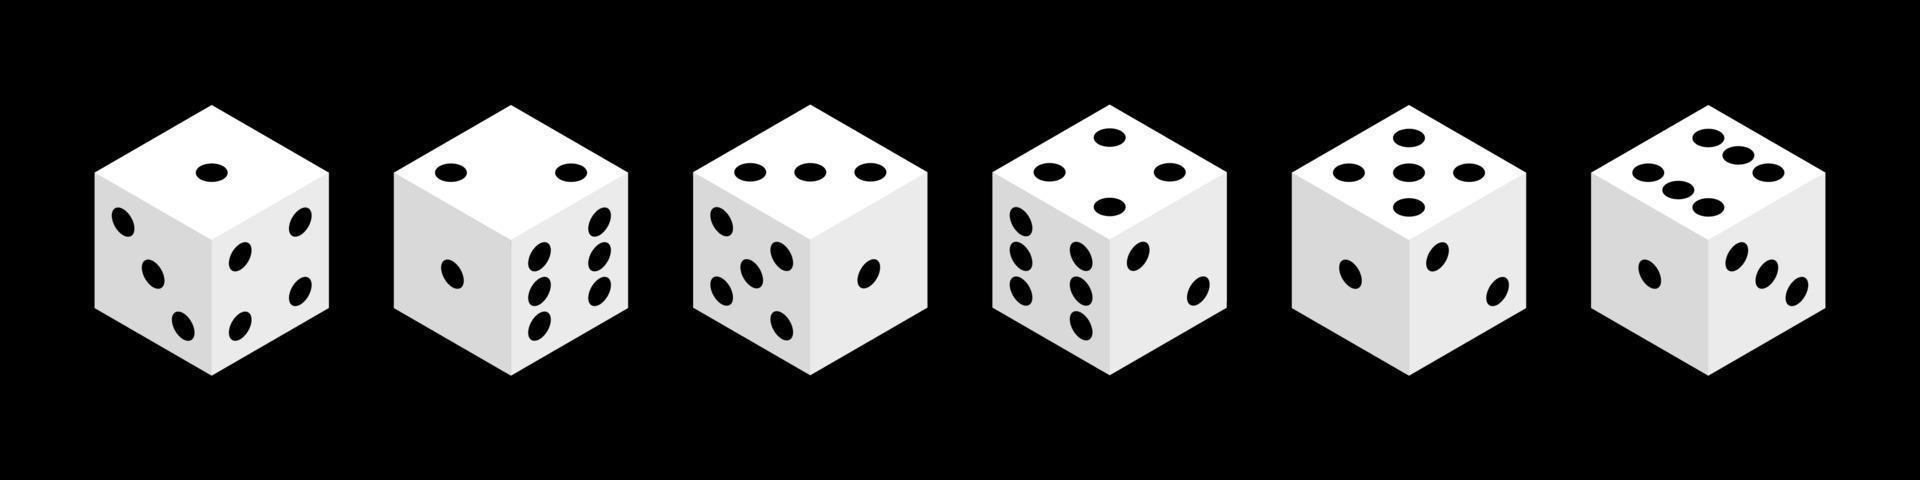 dés objets vectoriels isométriques isolés. cubes blancs réalistes avec un nombre aléatoire de points noirs ou de pépins. concept de conception de jeux de hasard, casino, craps et poker, jeux de table ou de société. vecteur